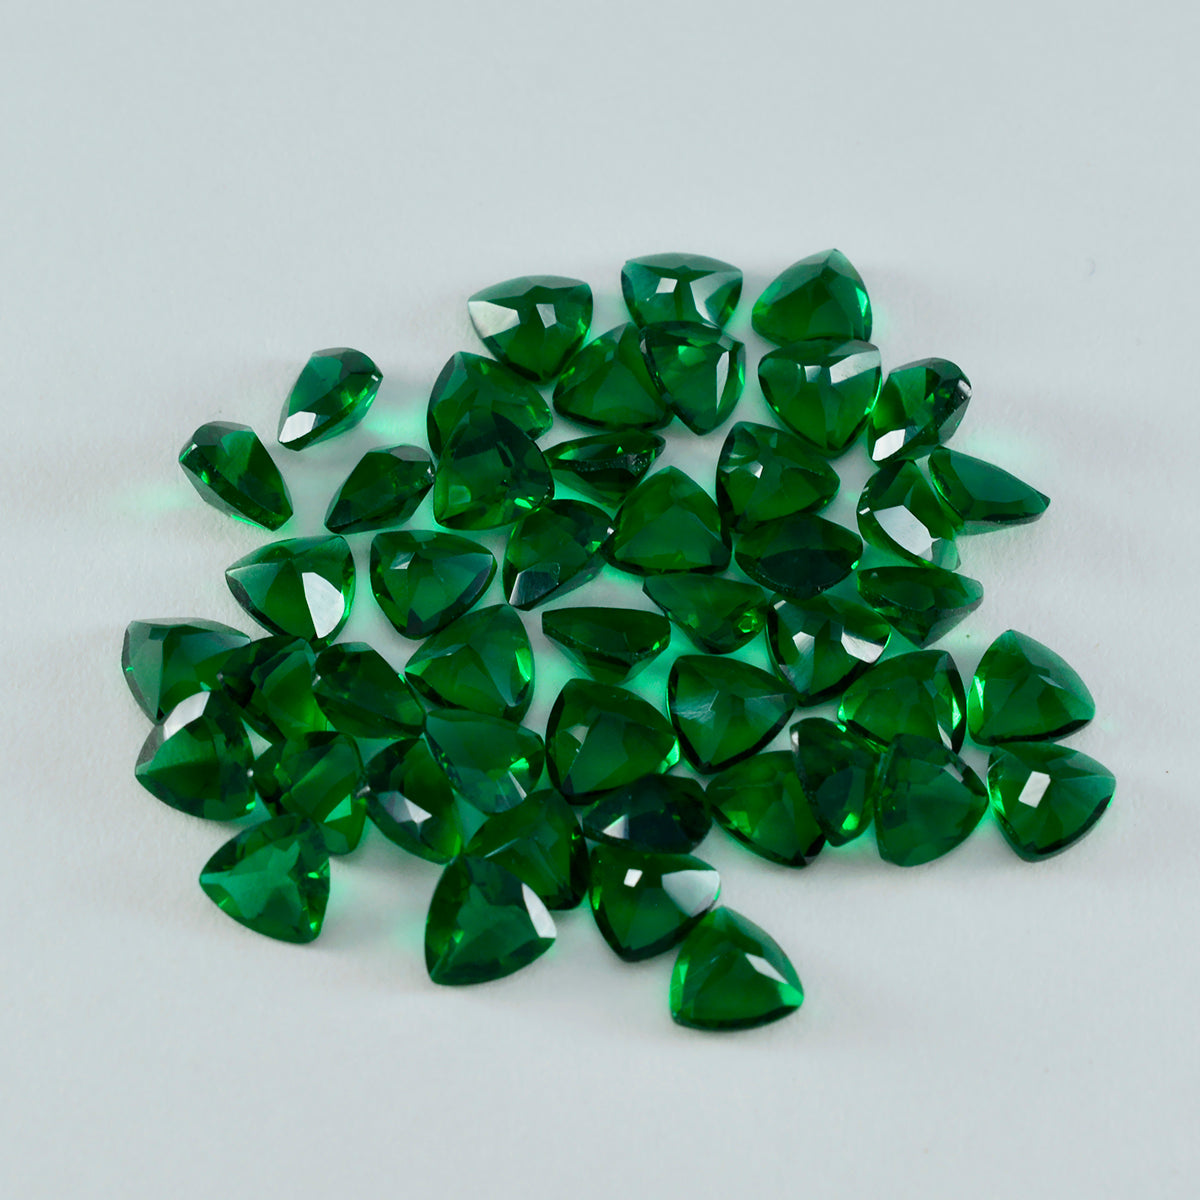 Riyogems 1 Stück grüner Smaragd, CZ, facettiert, 6 x 6 mm, Billionenform, fantastischer Qualitätsedelstein